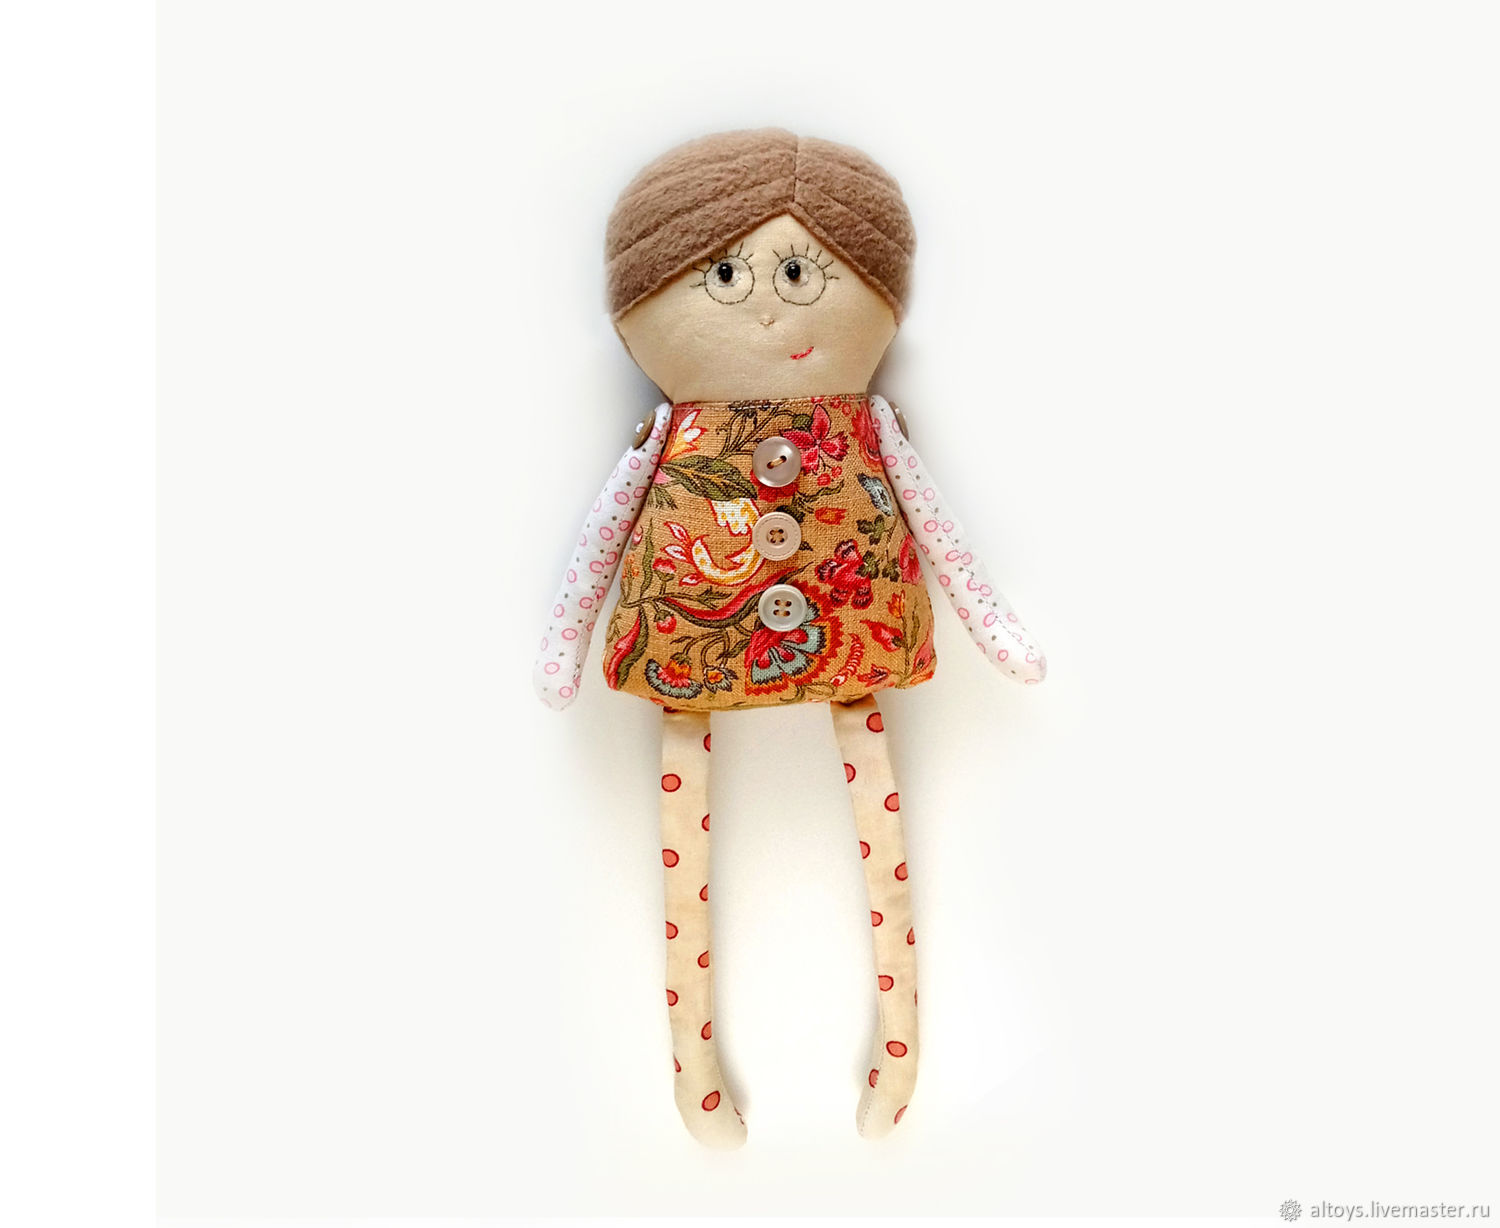 Текстильная кукла своими руками. Часть III